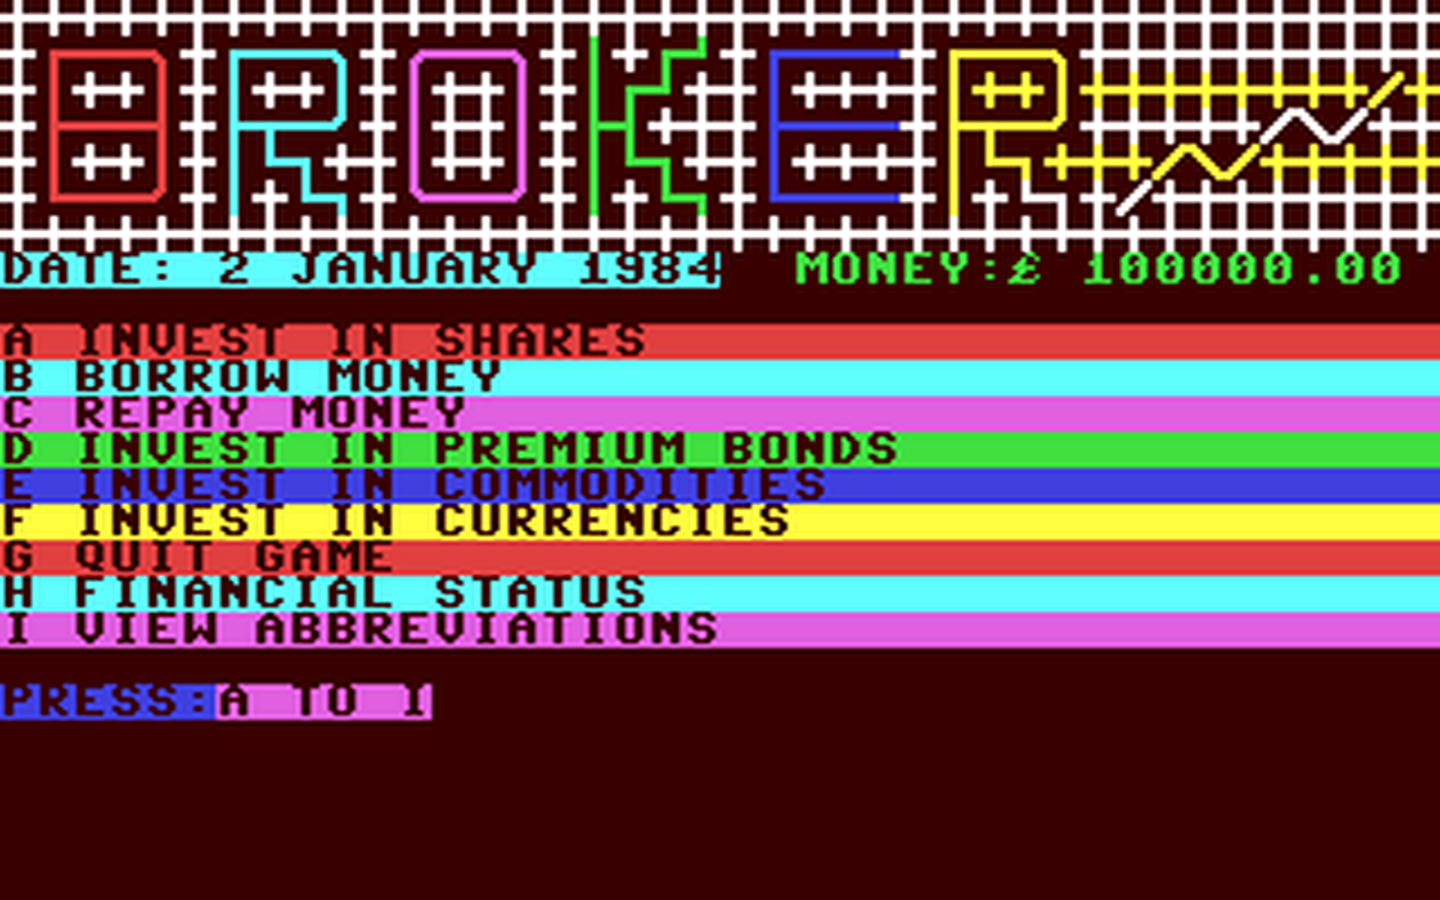 C64 GameBase Broker Ellis_Horwood_Ltd. 1984